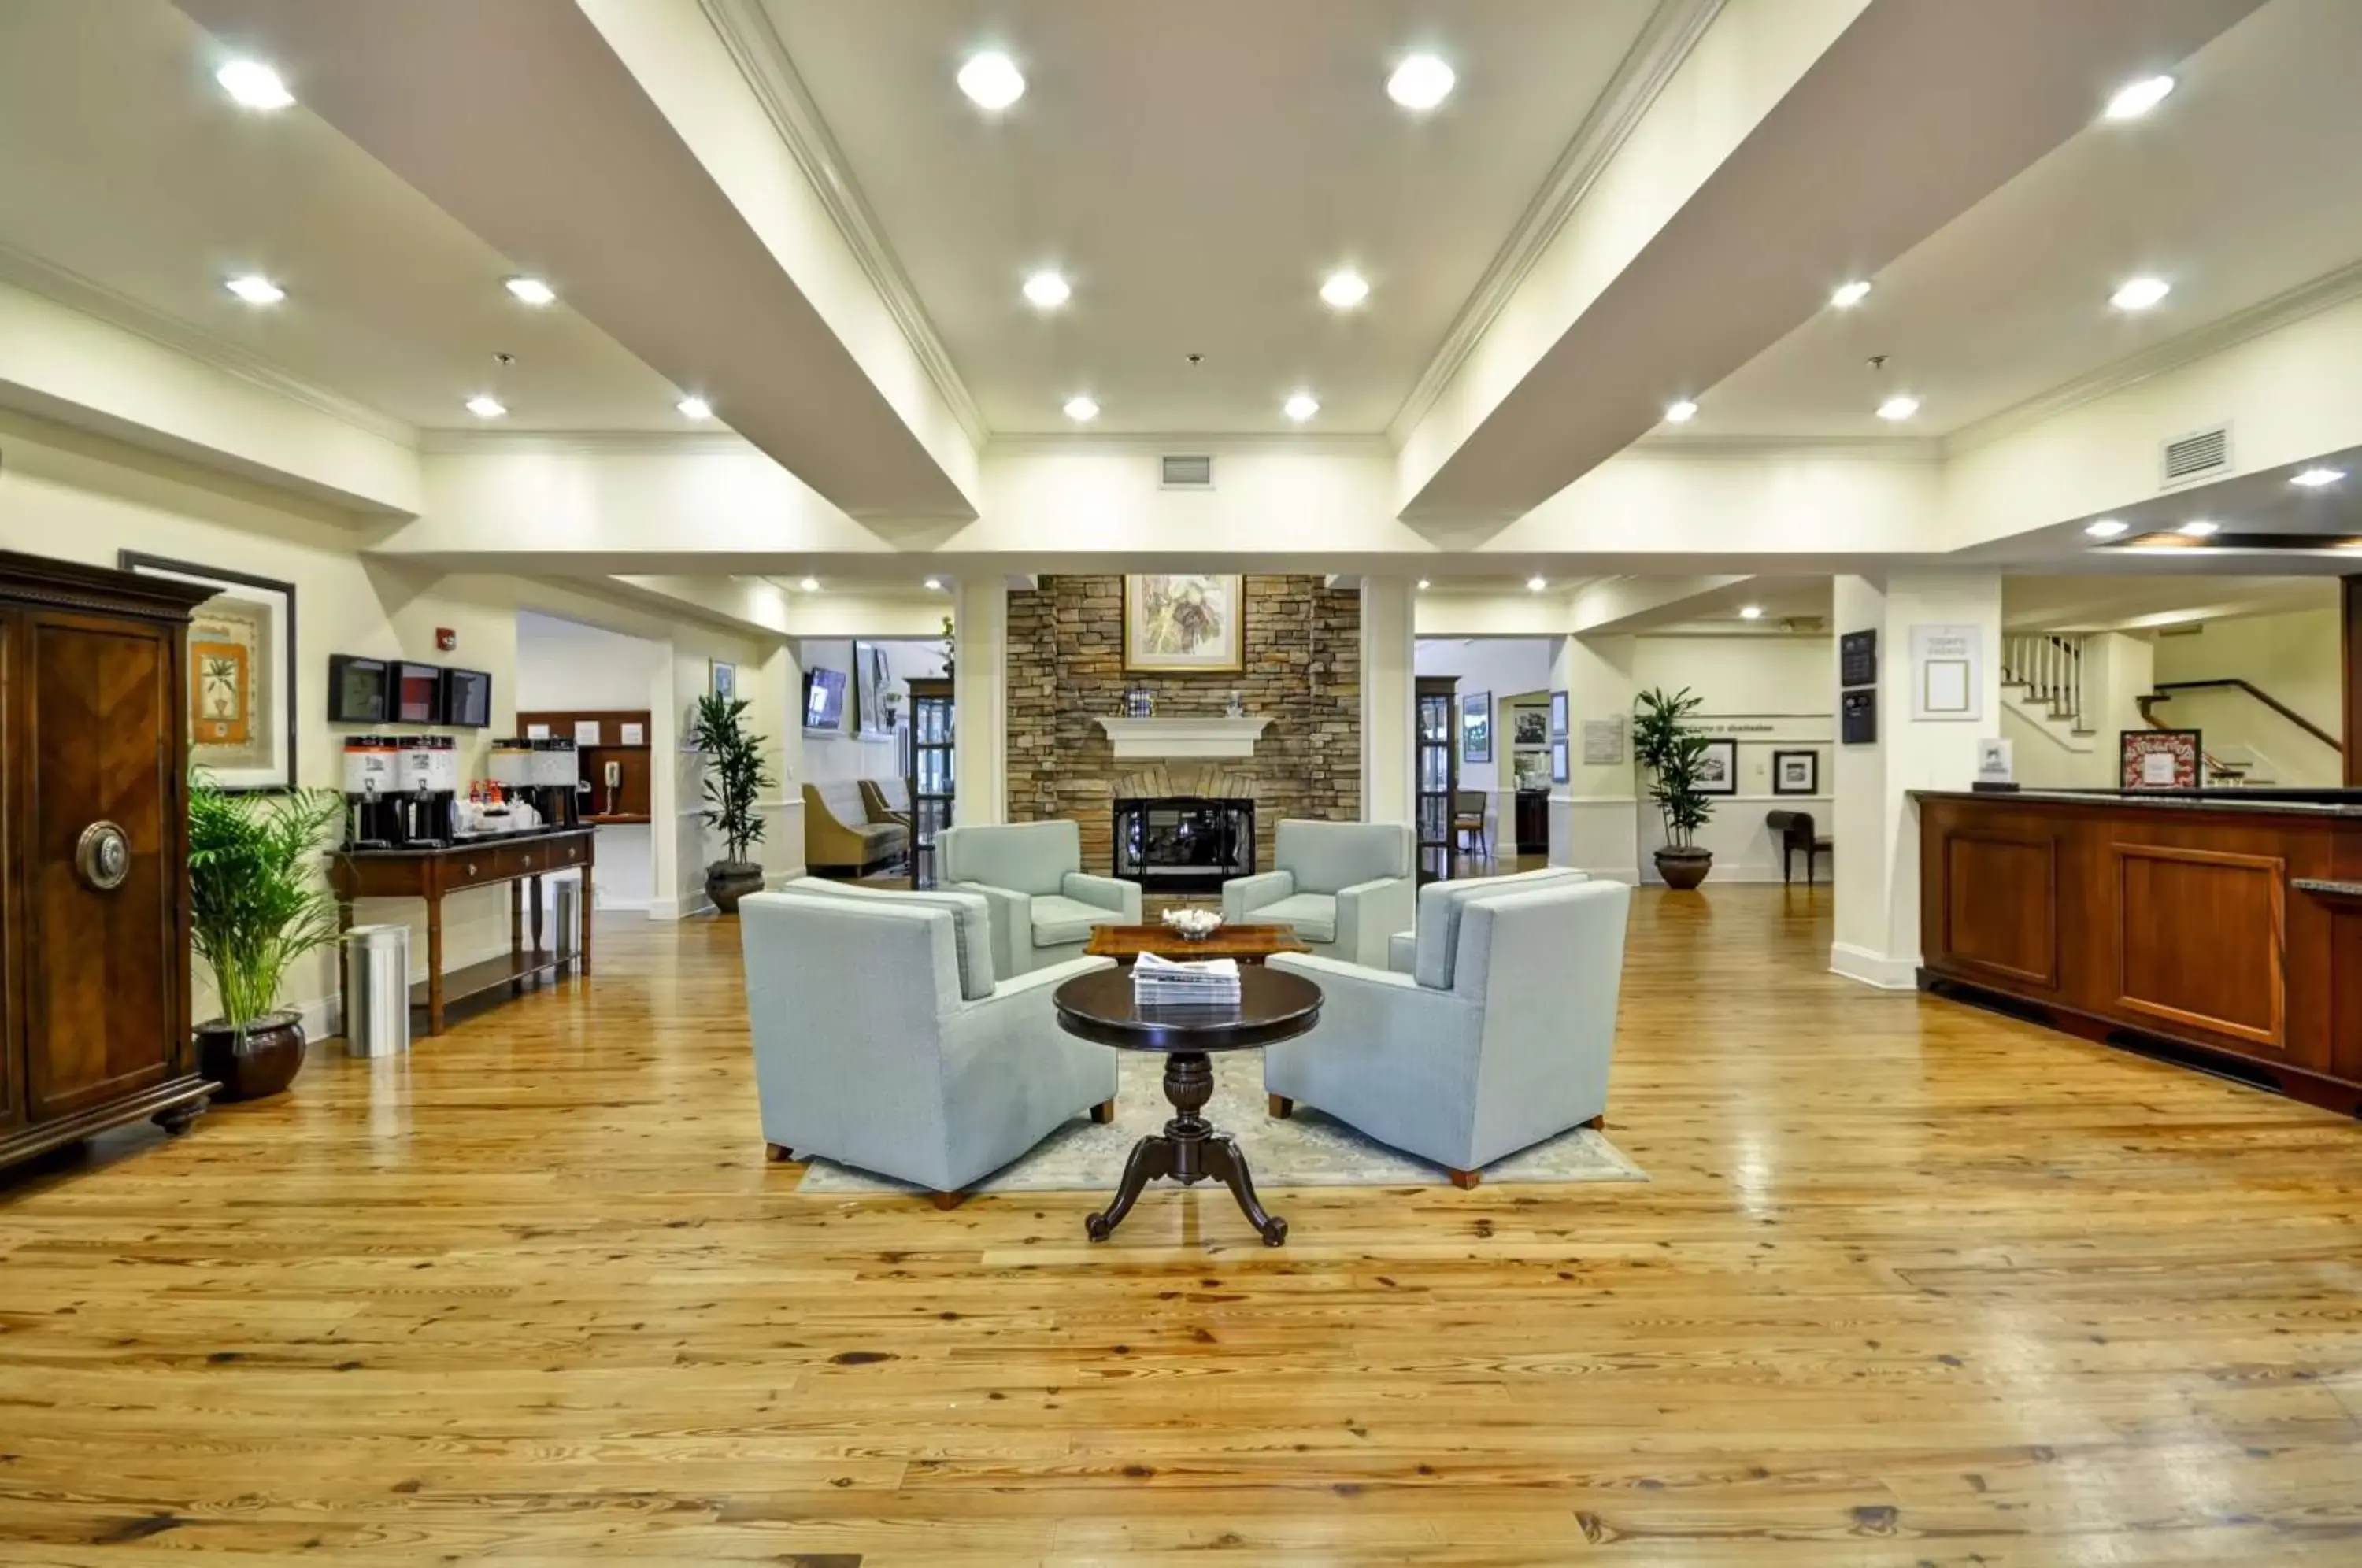 Lobby or reception, Lobby/Reception in Hampton Inn & Suites Charleston-West Ashley